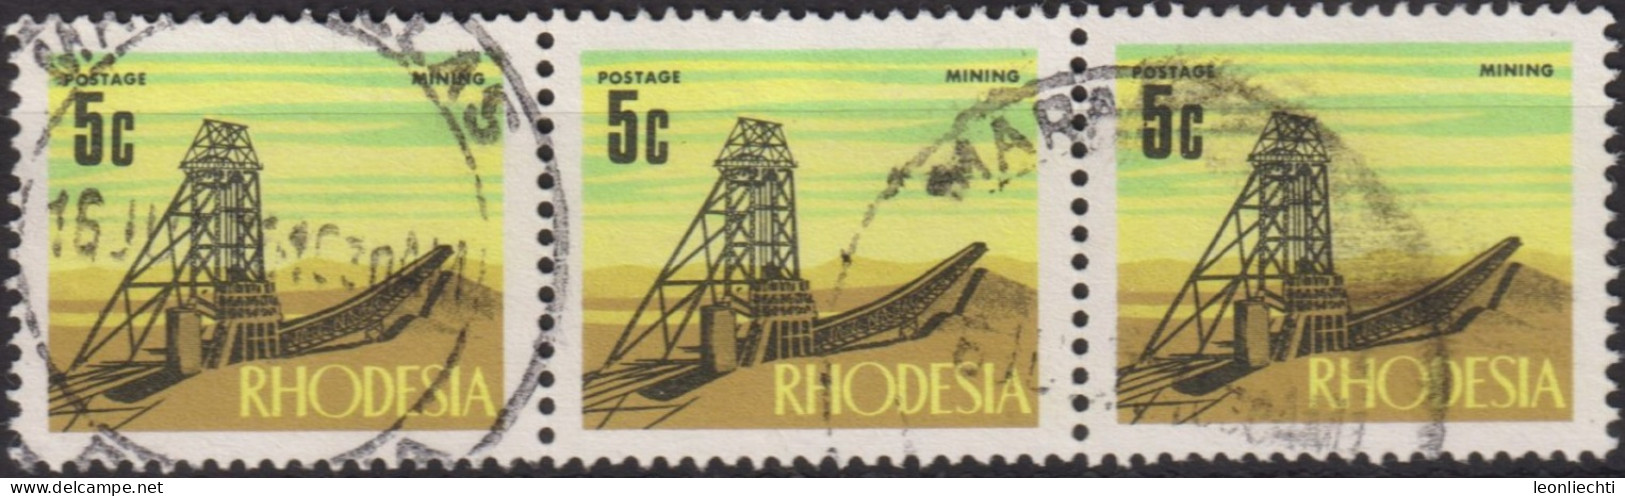 1970 Rhodesien ° Mi:RH 92, Sn:RH 281, Yt:RH 186, Sg:RH 443, Mining, Decimal Currency Definitives (1970-1973) - Rhodesia (1964-1980)